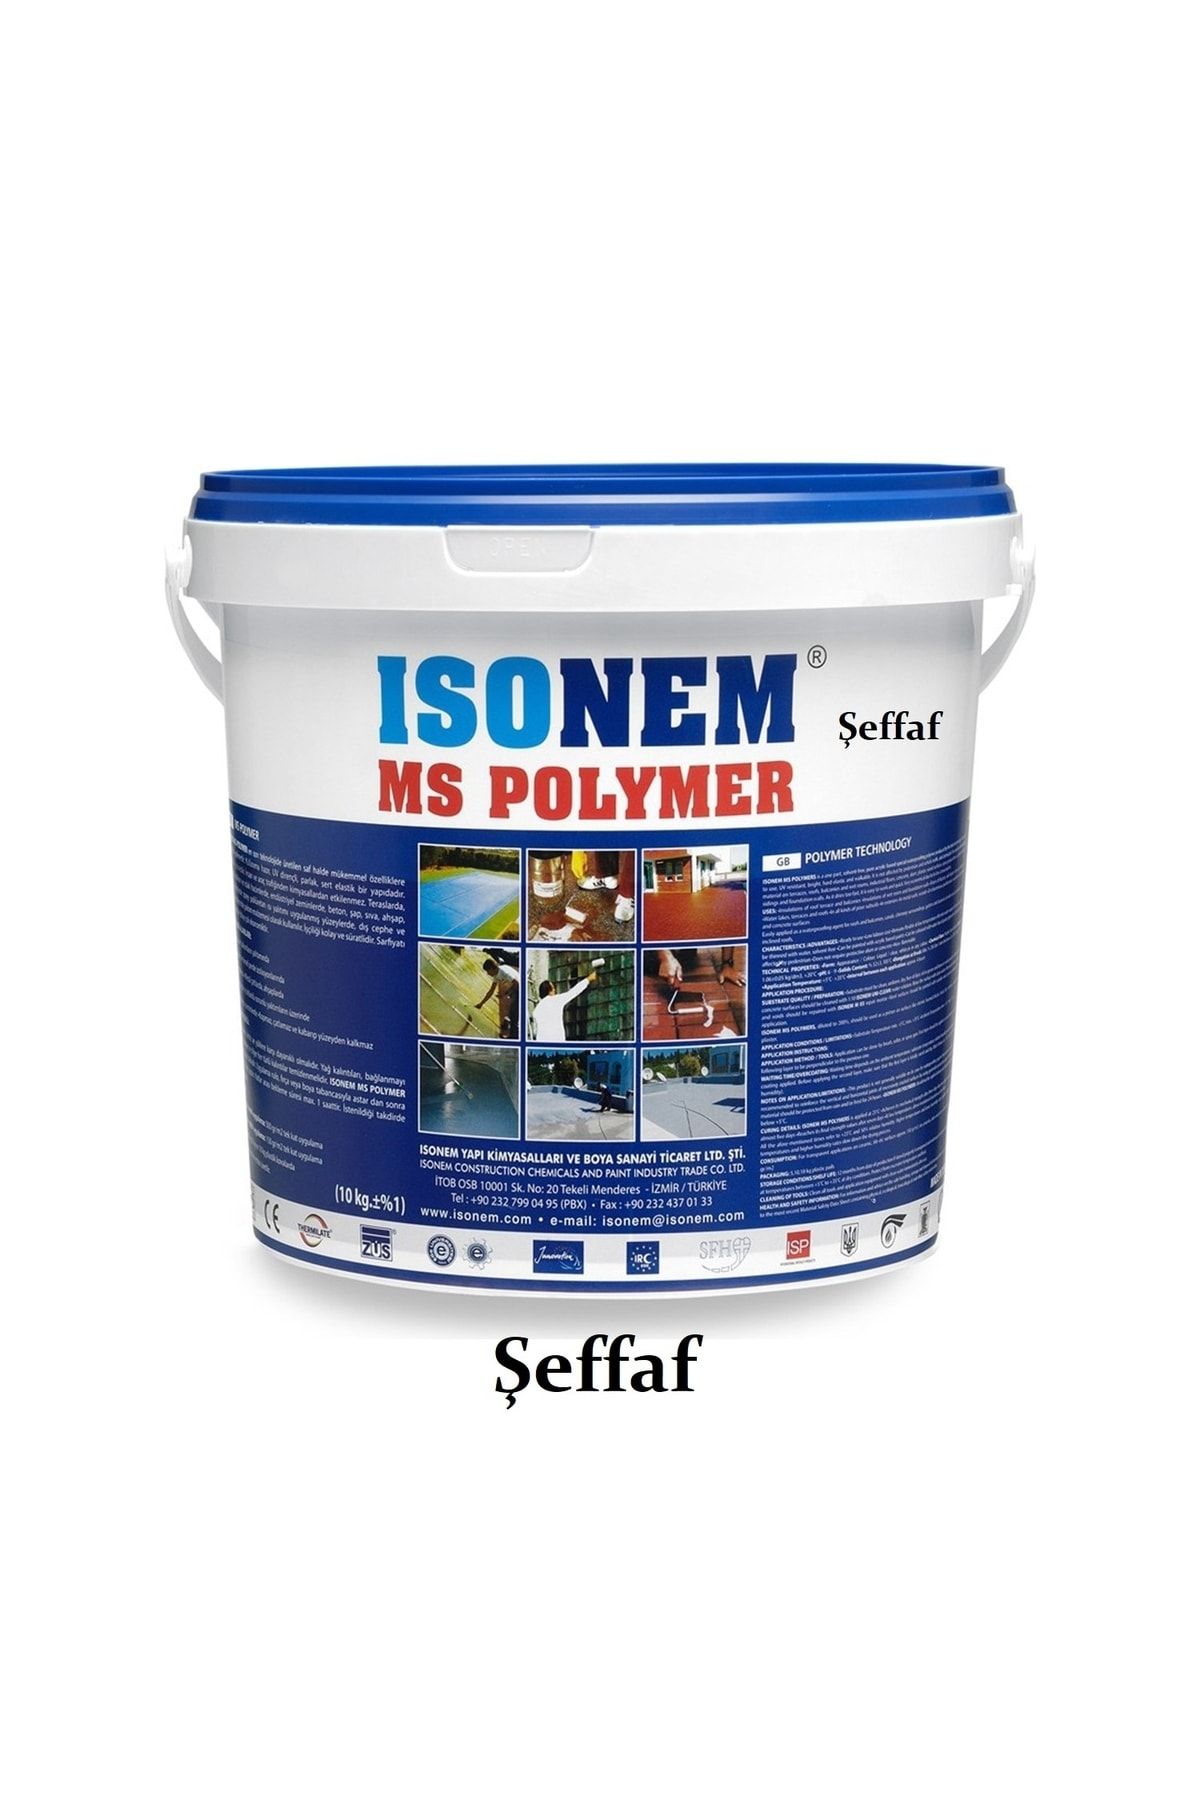 Isonem Ms Polymer Şeffaf Teras, Çatı Ve Balkonlarınız Için Su Yalıtımı - %300 Elastik Su Yalıtımı - 10 Kg -